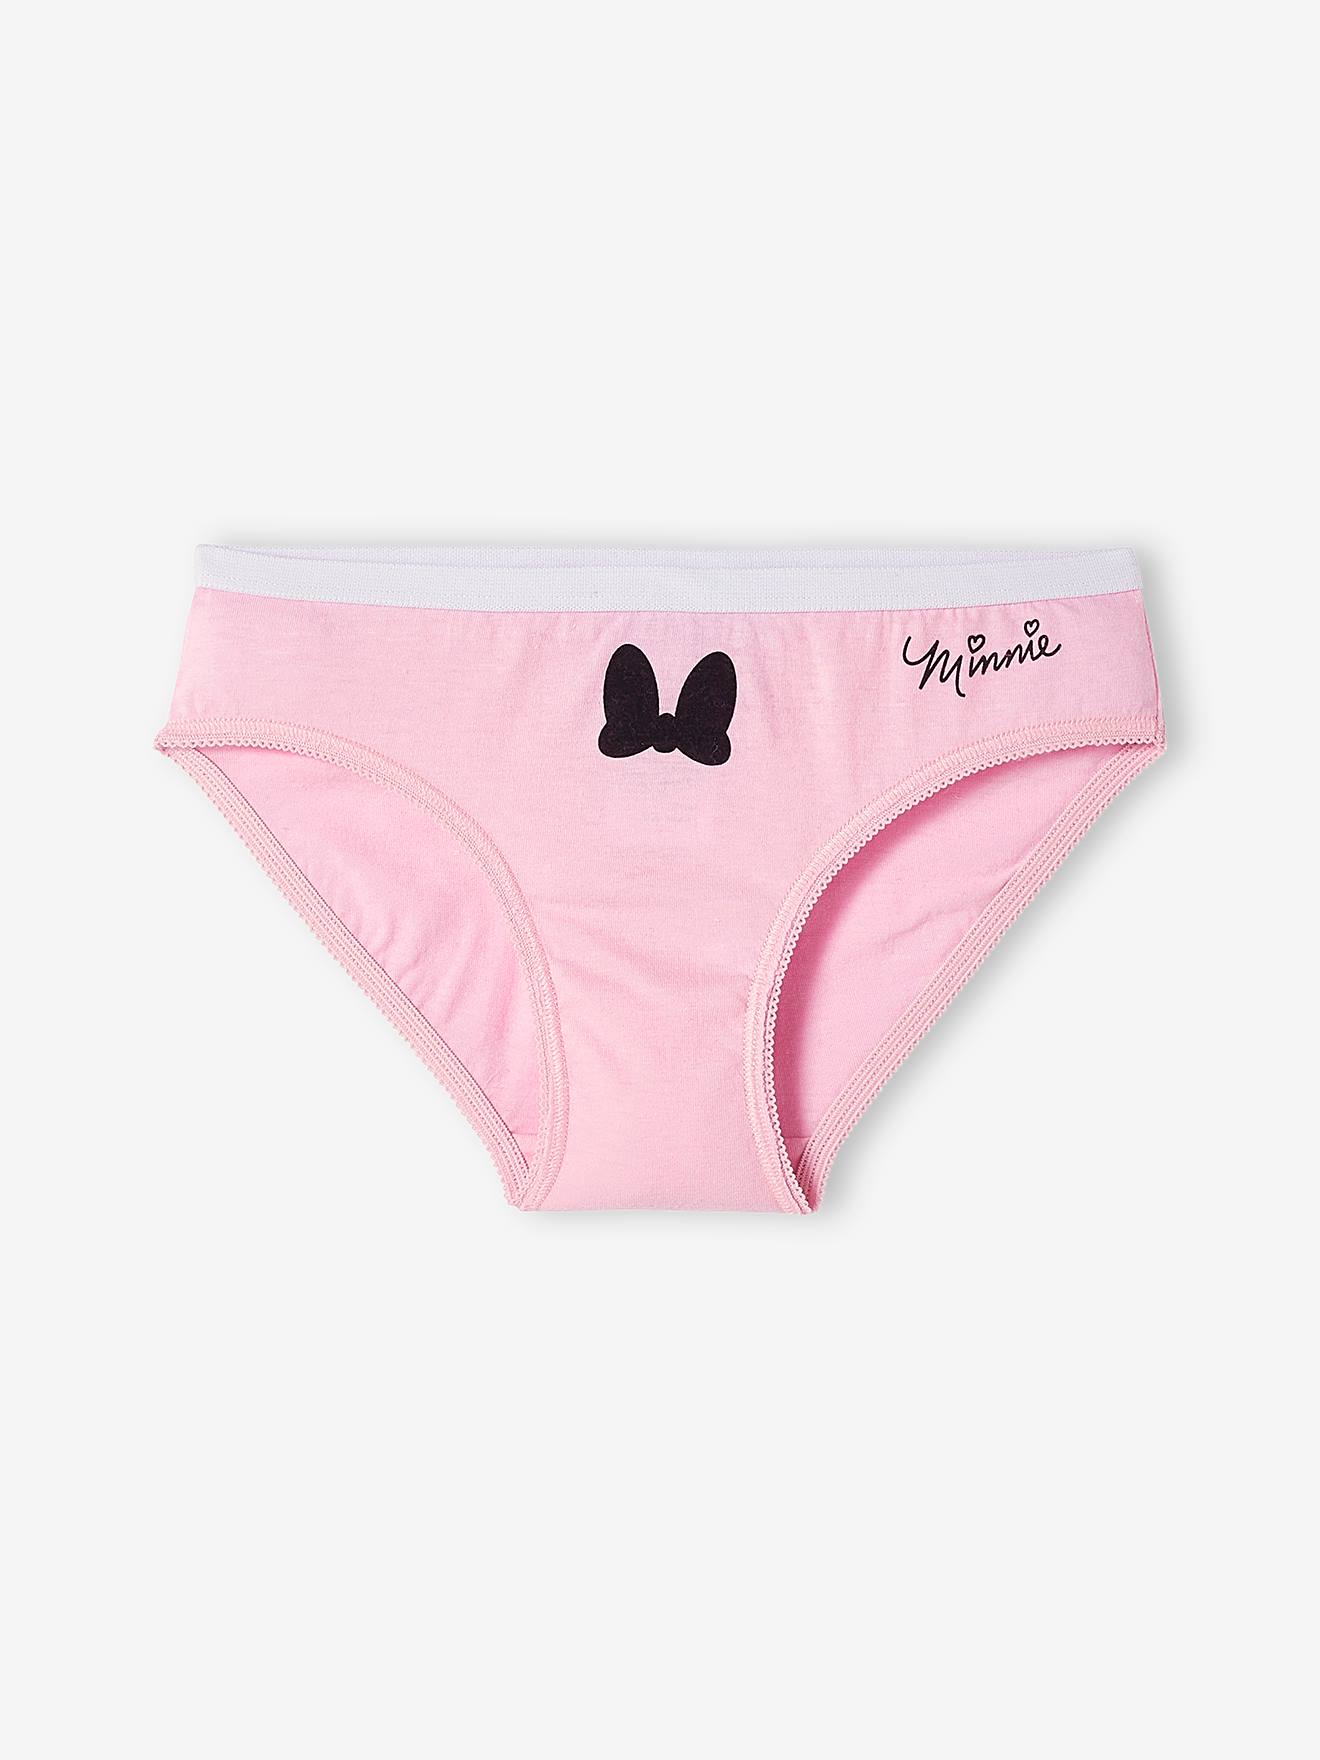 Disney Minnie Mouse Cotton Underwear Briefs 7 Pack Panty Girls